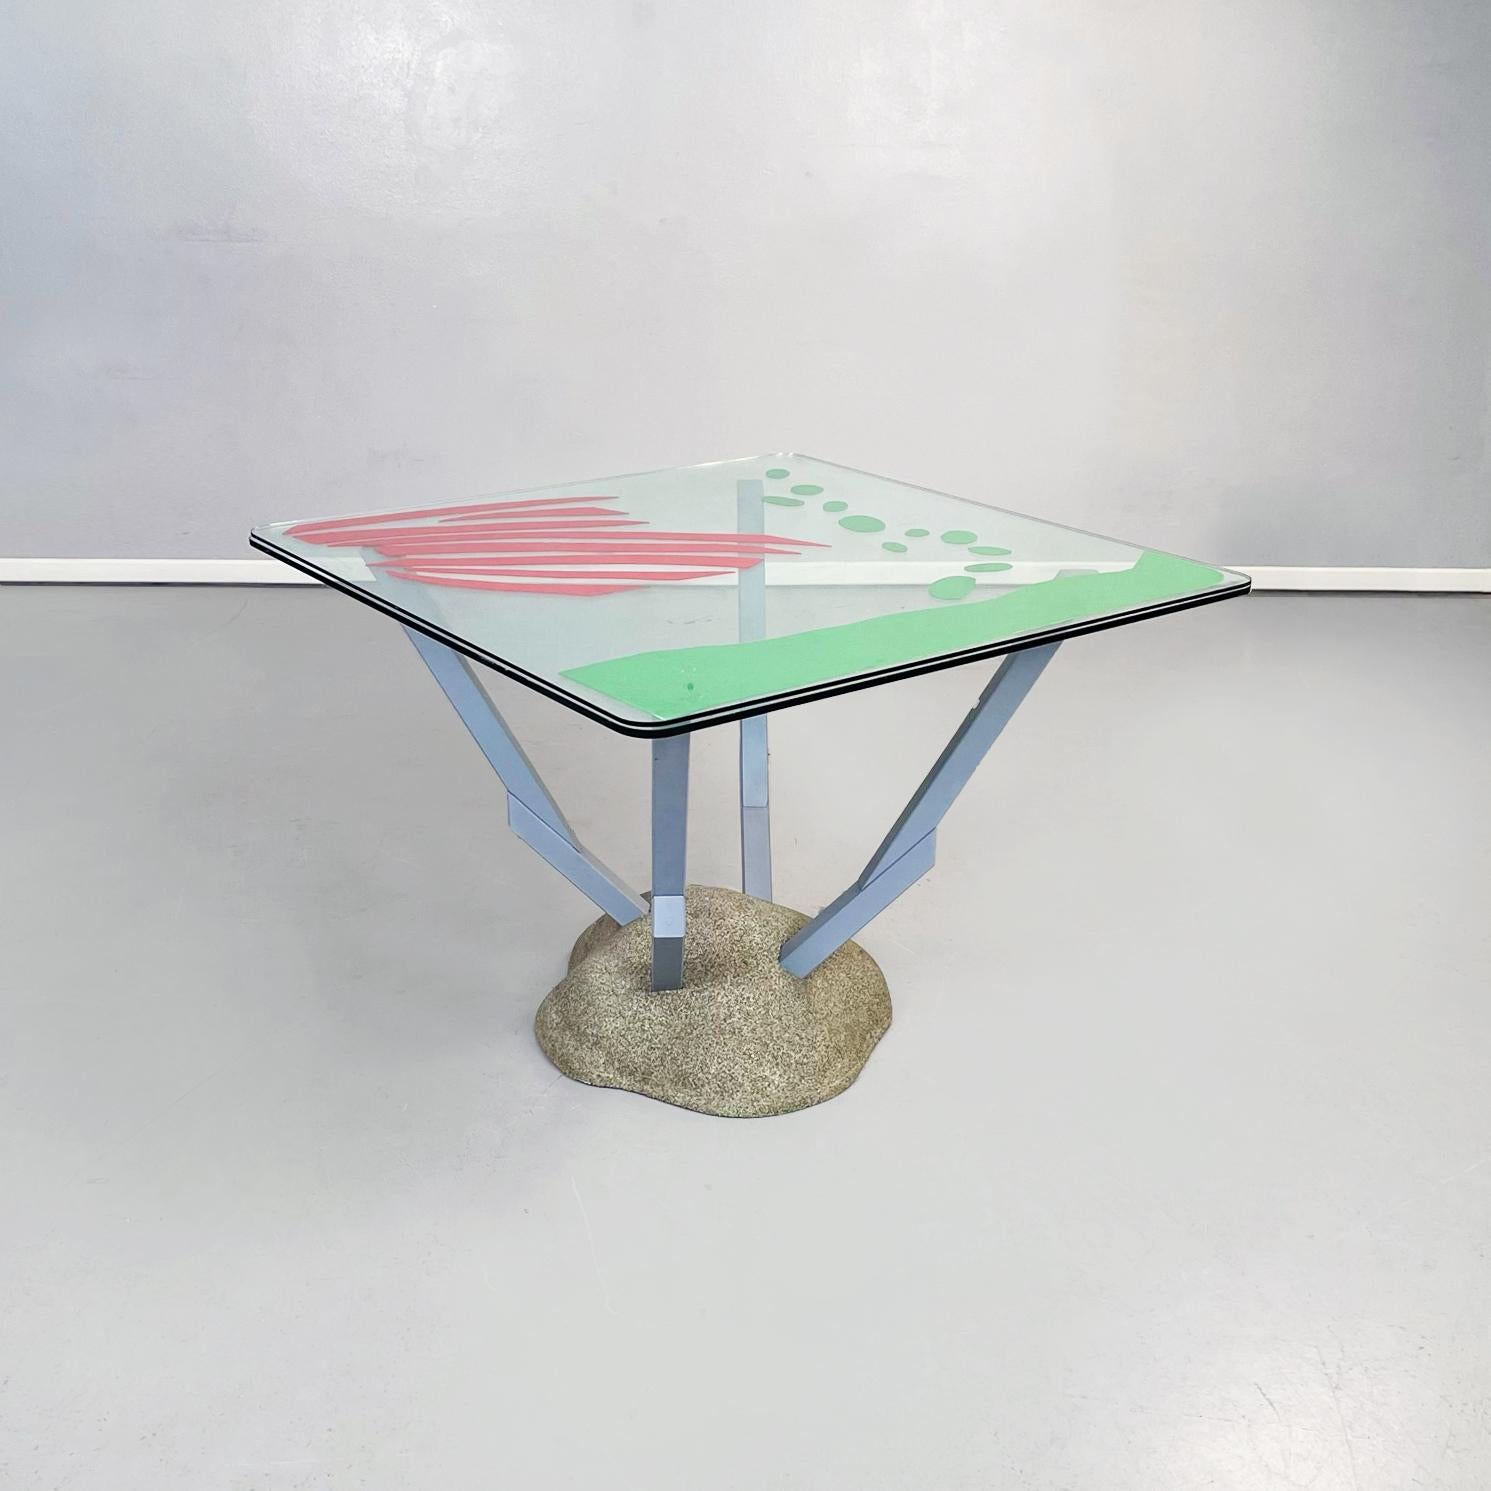 Italie moderne Table Artifici en verre, tissu et bois de Paolo Deganello pour Cassina, 1985
Table de salle à manger mod. Artifici avec plateau en verre carré aux angles arrondis. Le sommet est constitué de deux plaques de verre superposées, au